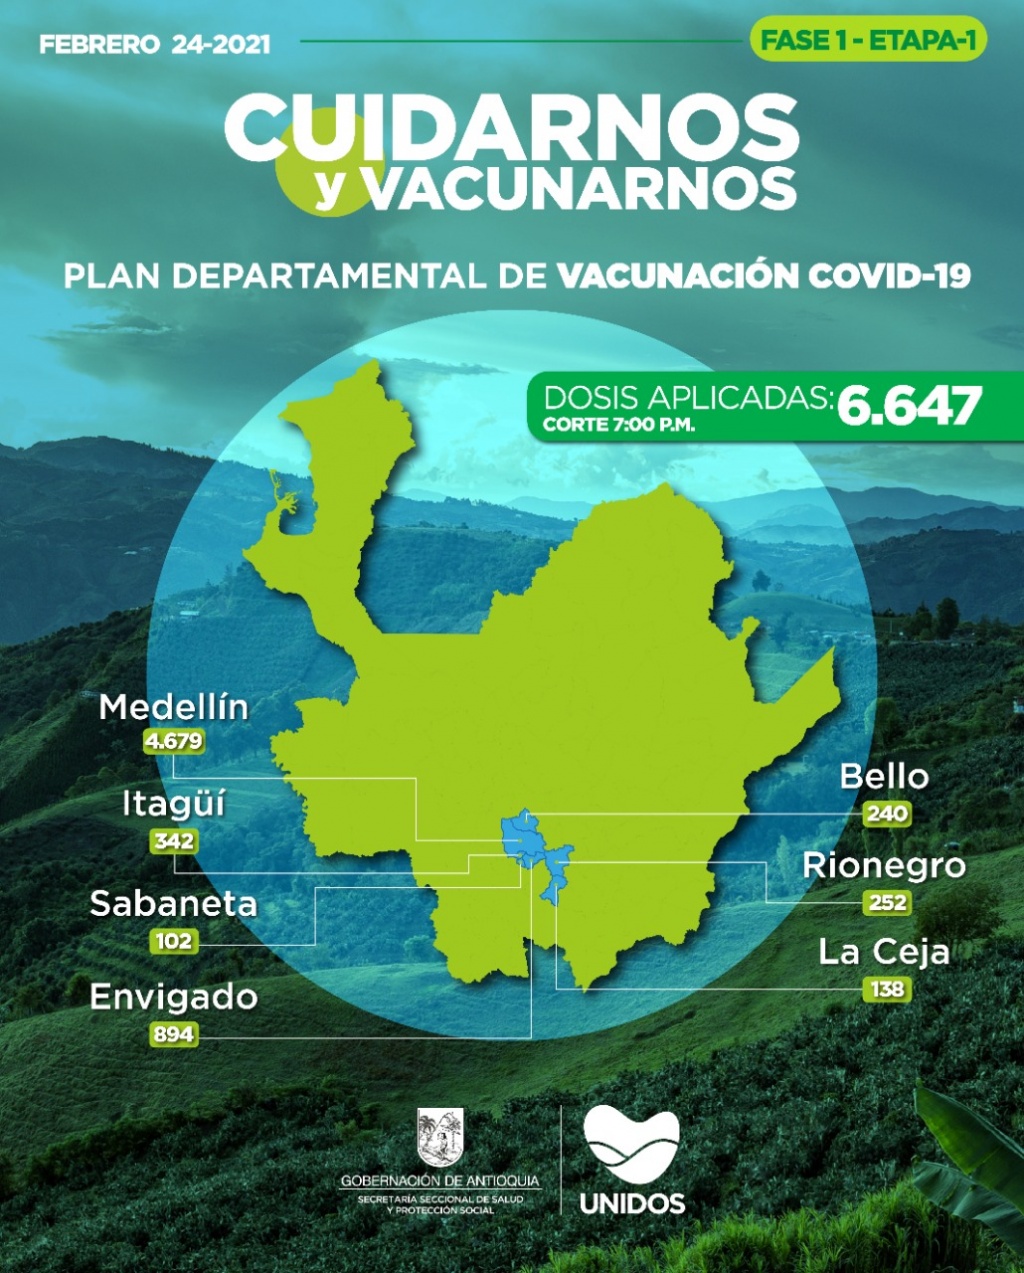 Con 80 dosis aplicadas hoy, Antioquia llega a 6.647 vacunados contra COVID19